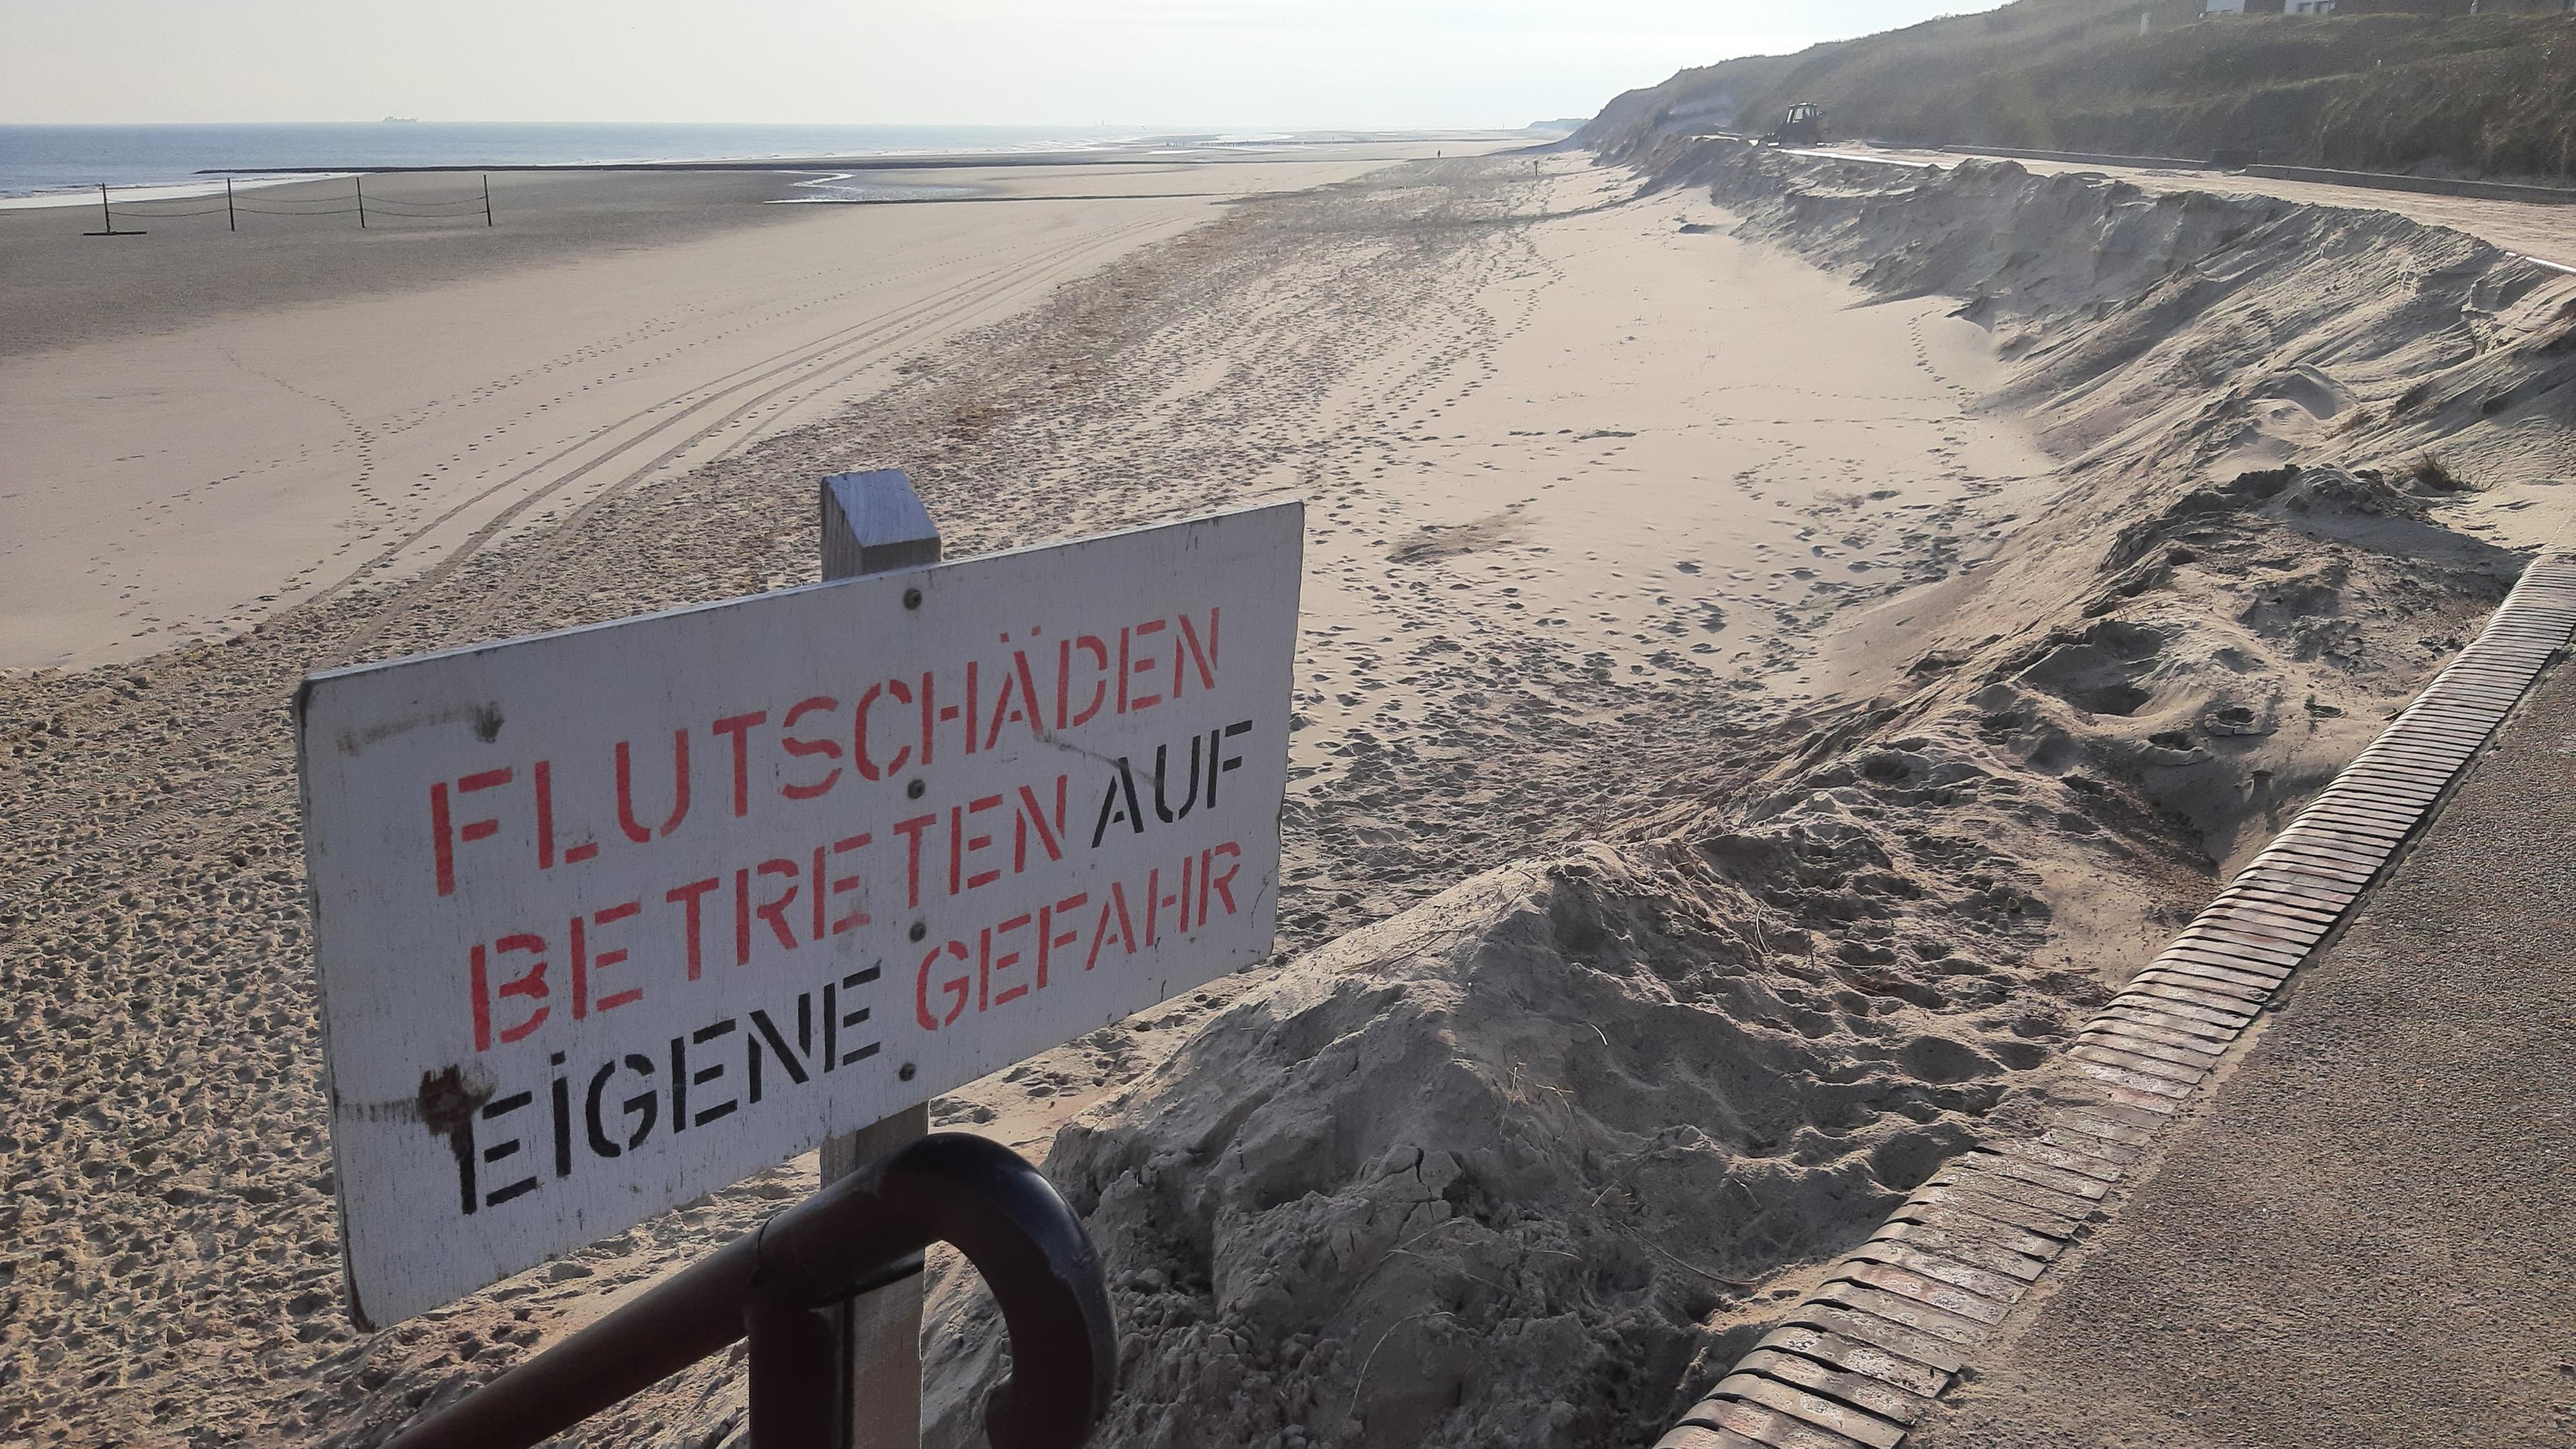 Ein Schild mit der Aufschrift "Flutschäden Betreten auf eigene Gefahr" weist am Strand der Insel Wangerooge auf fehlenden Sand am Strand hin.